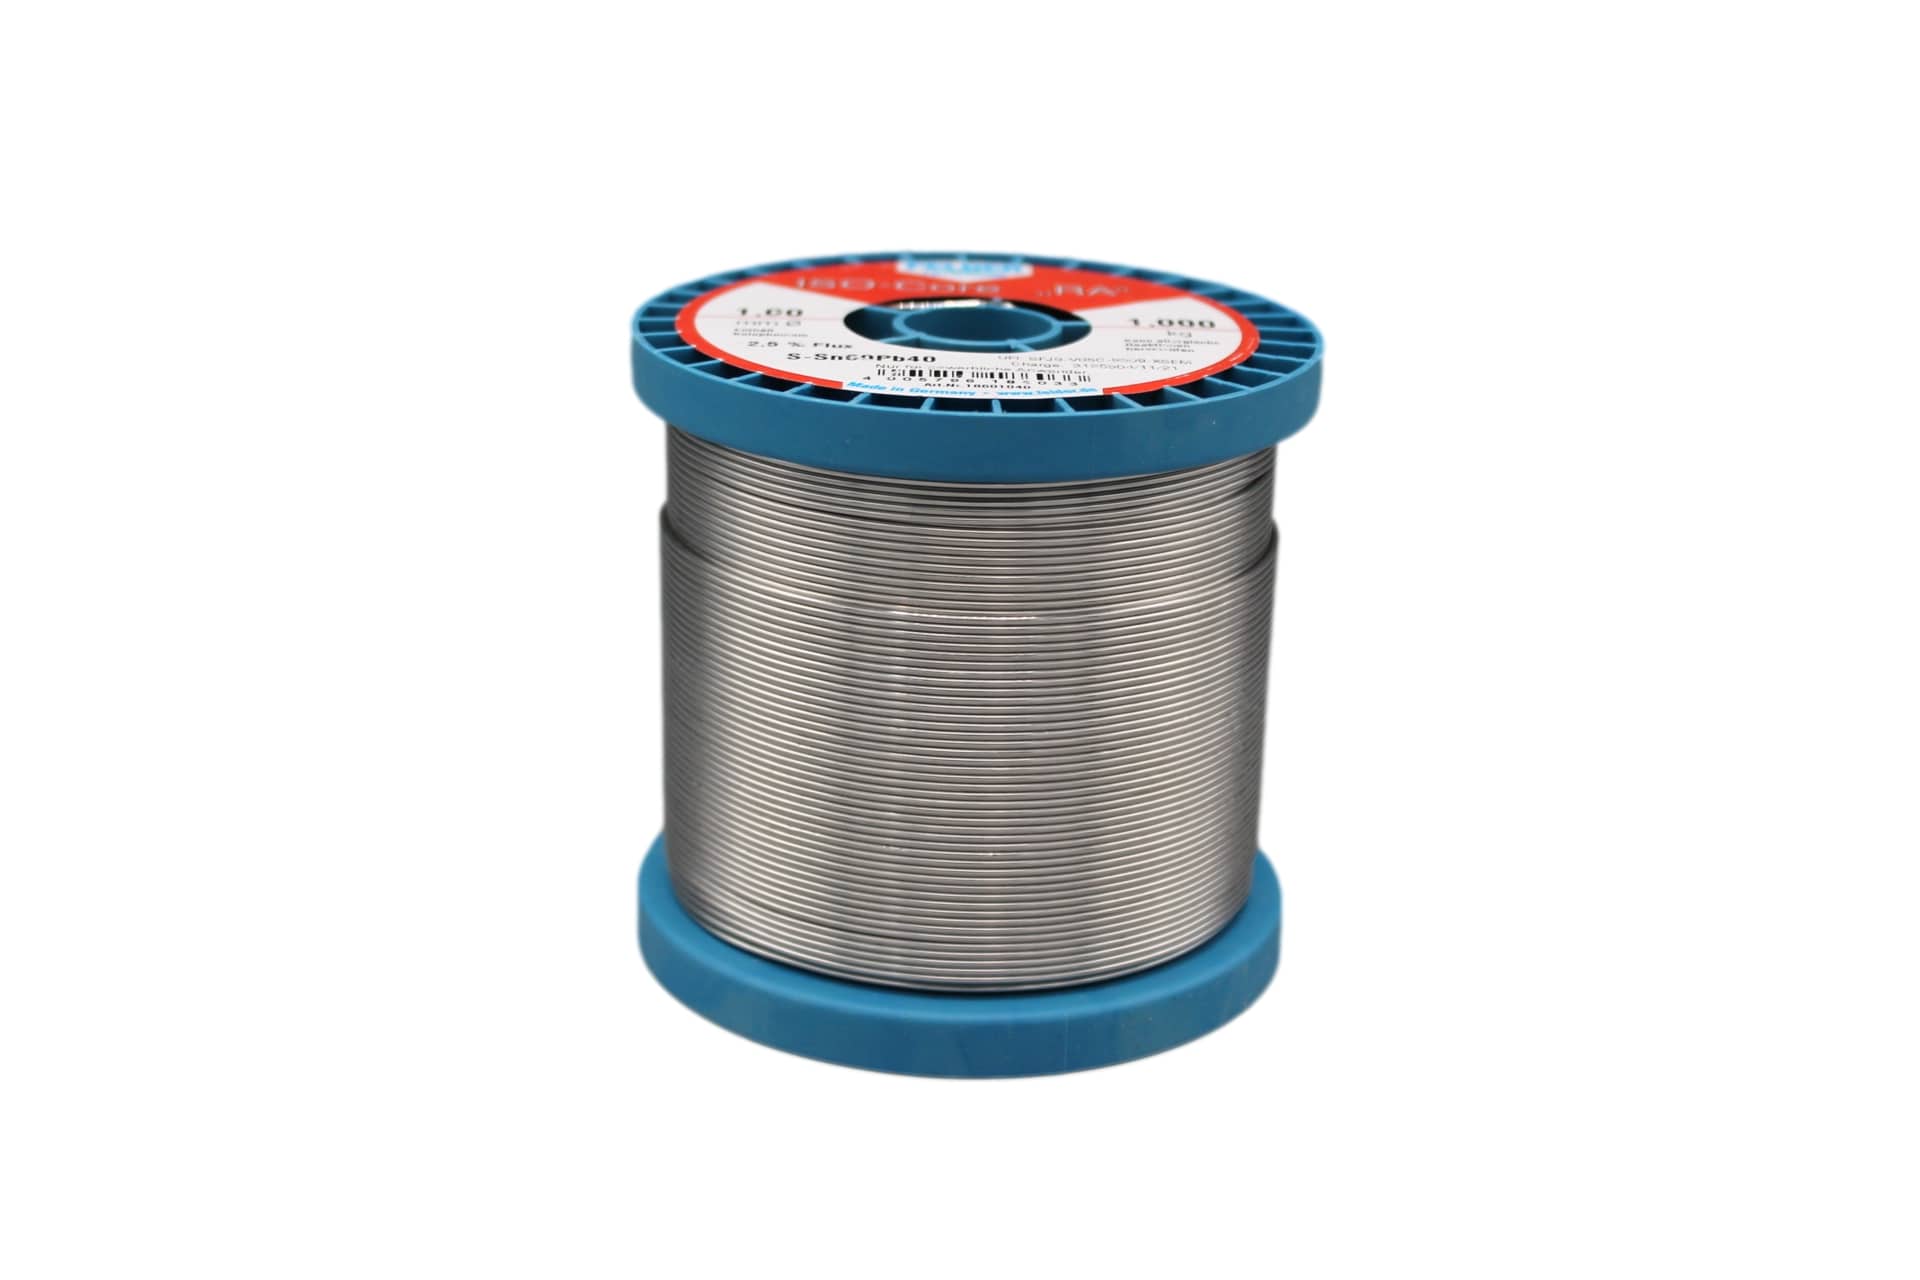 18601040 Felder solder wire, leaded, Sn60Pb40, 1 mm, 1000g, roll